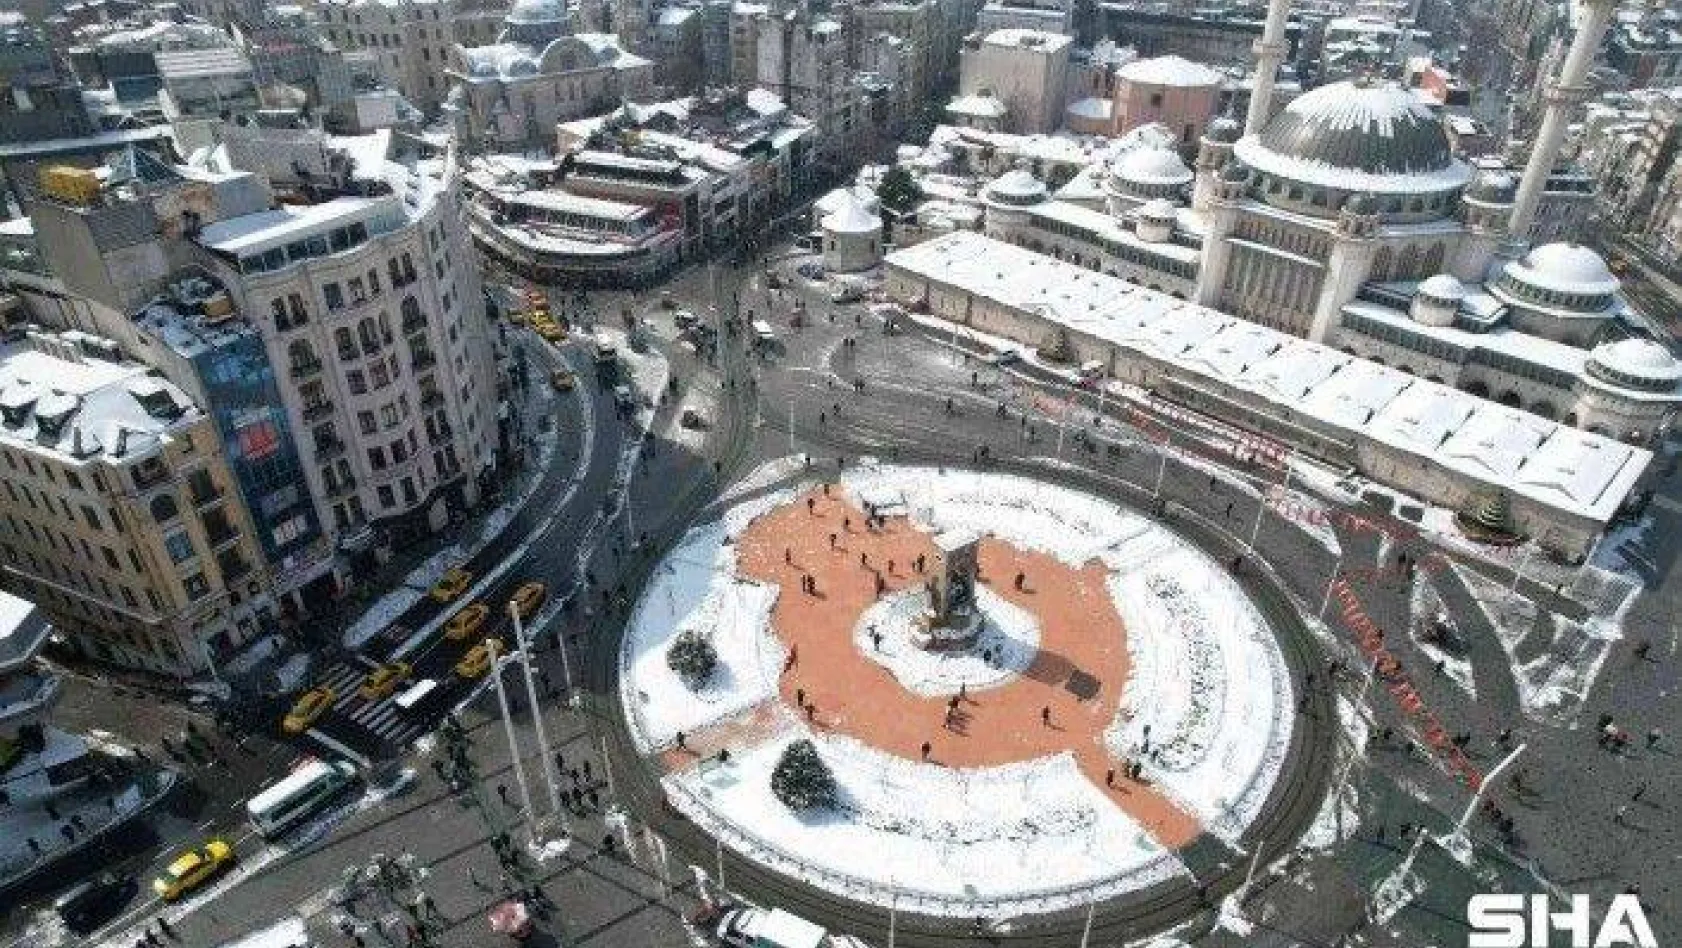 Beyaza bürünen Taksim Meydanı havadan görüntülendi